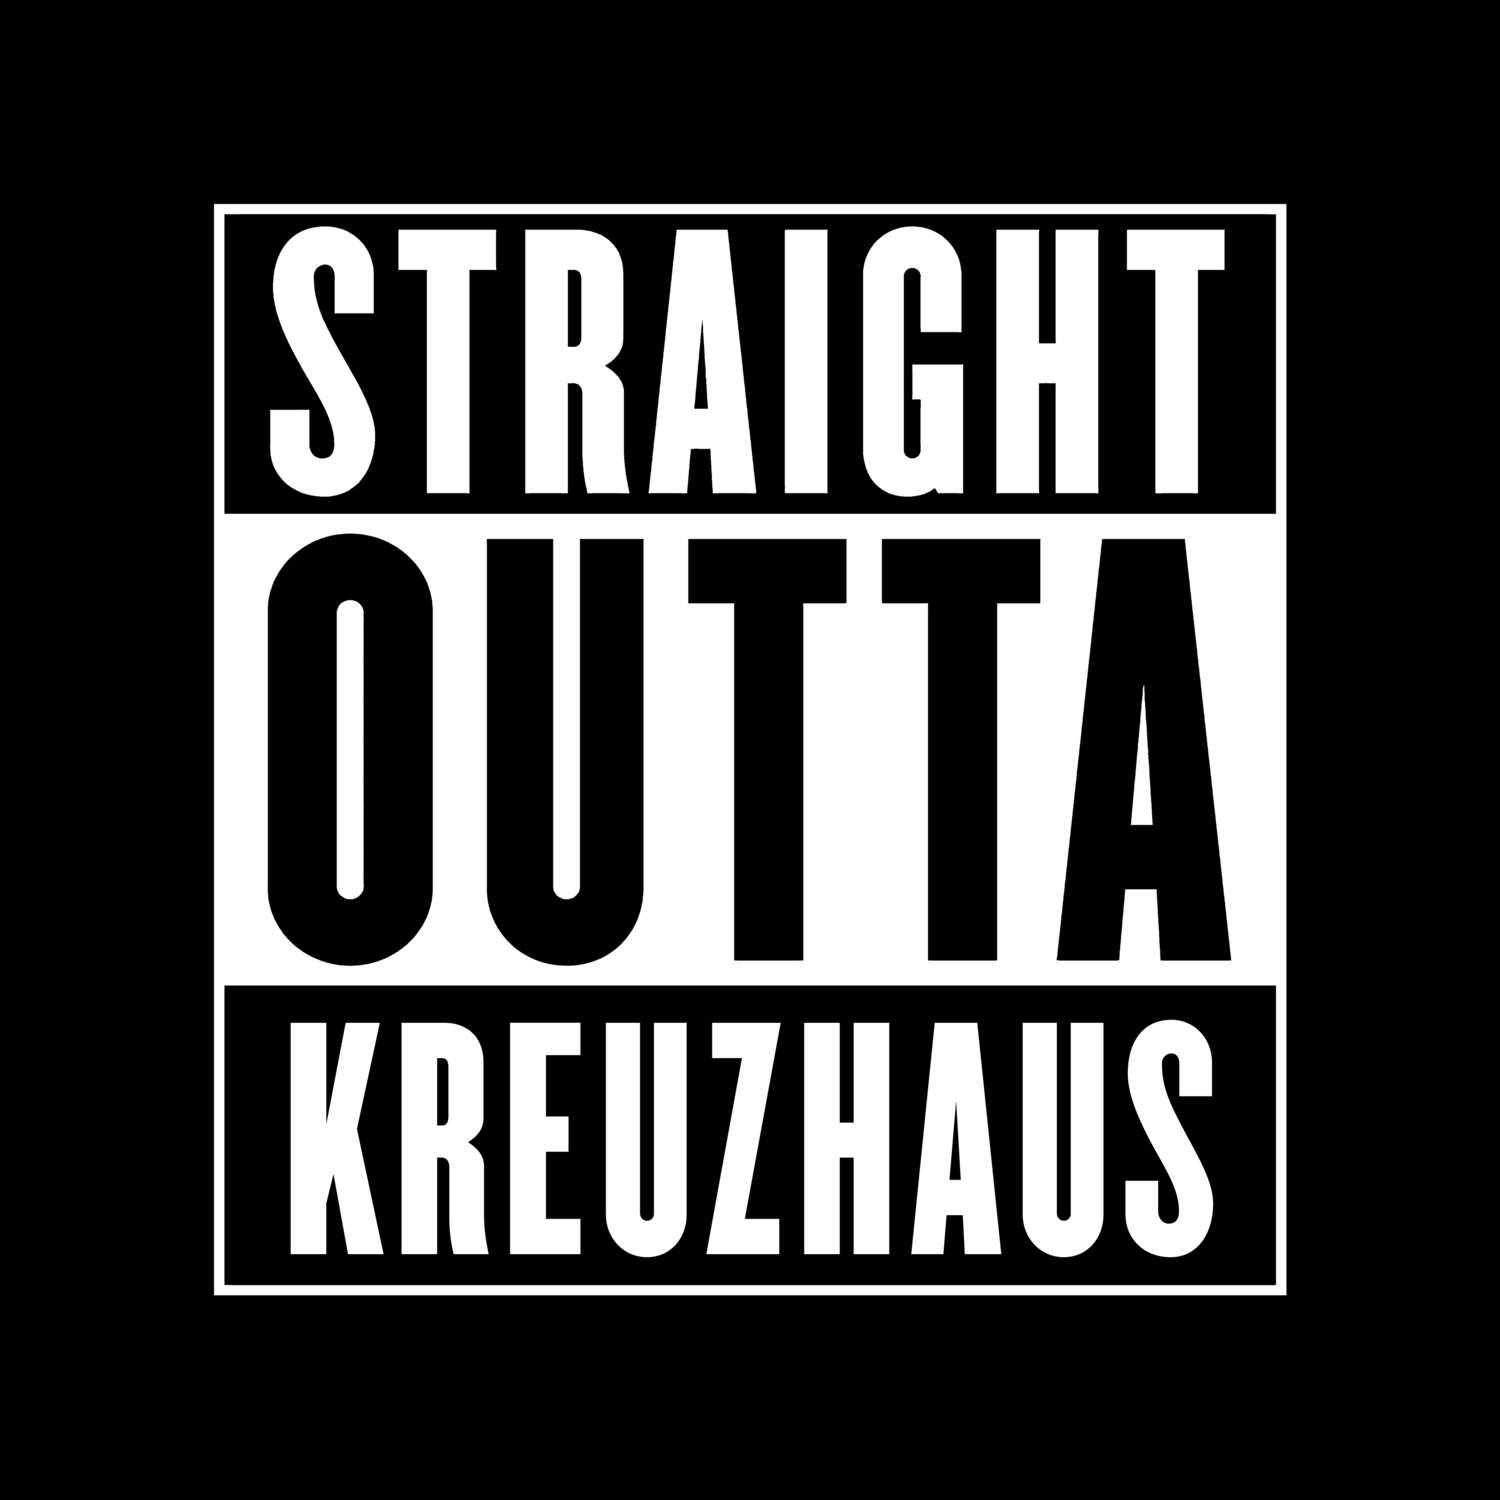 Kreuzhaus T-Shirt »Straight Outta«